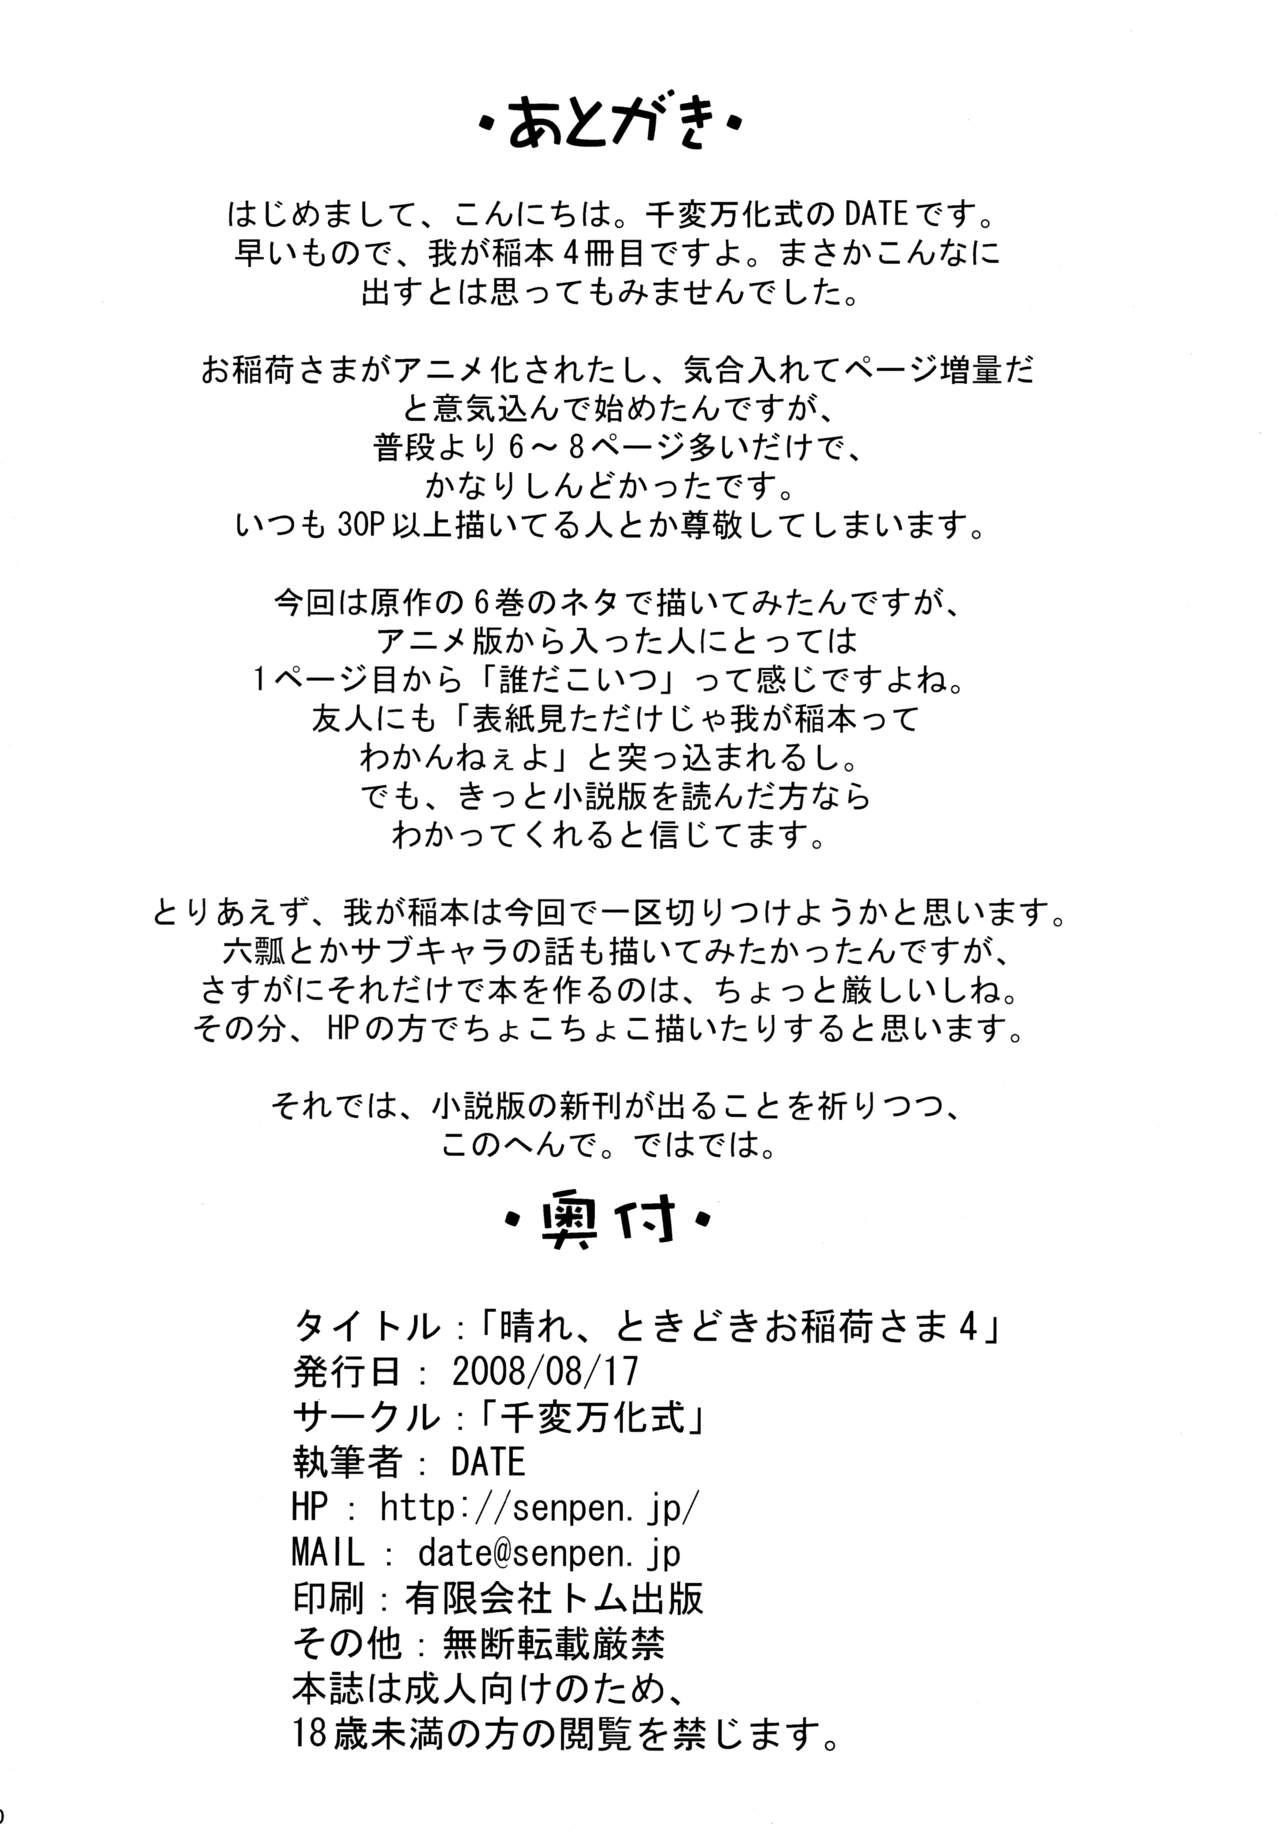 Pau Hare, Tokidoki Oinari-sama 4 - Wagaya no oinari-sama Watersports - Page 30